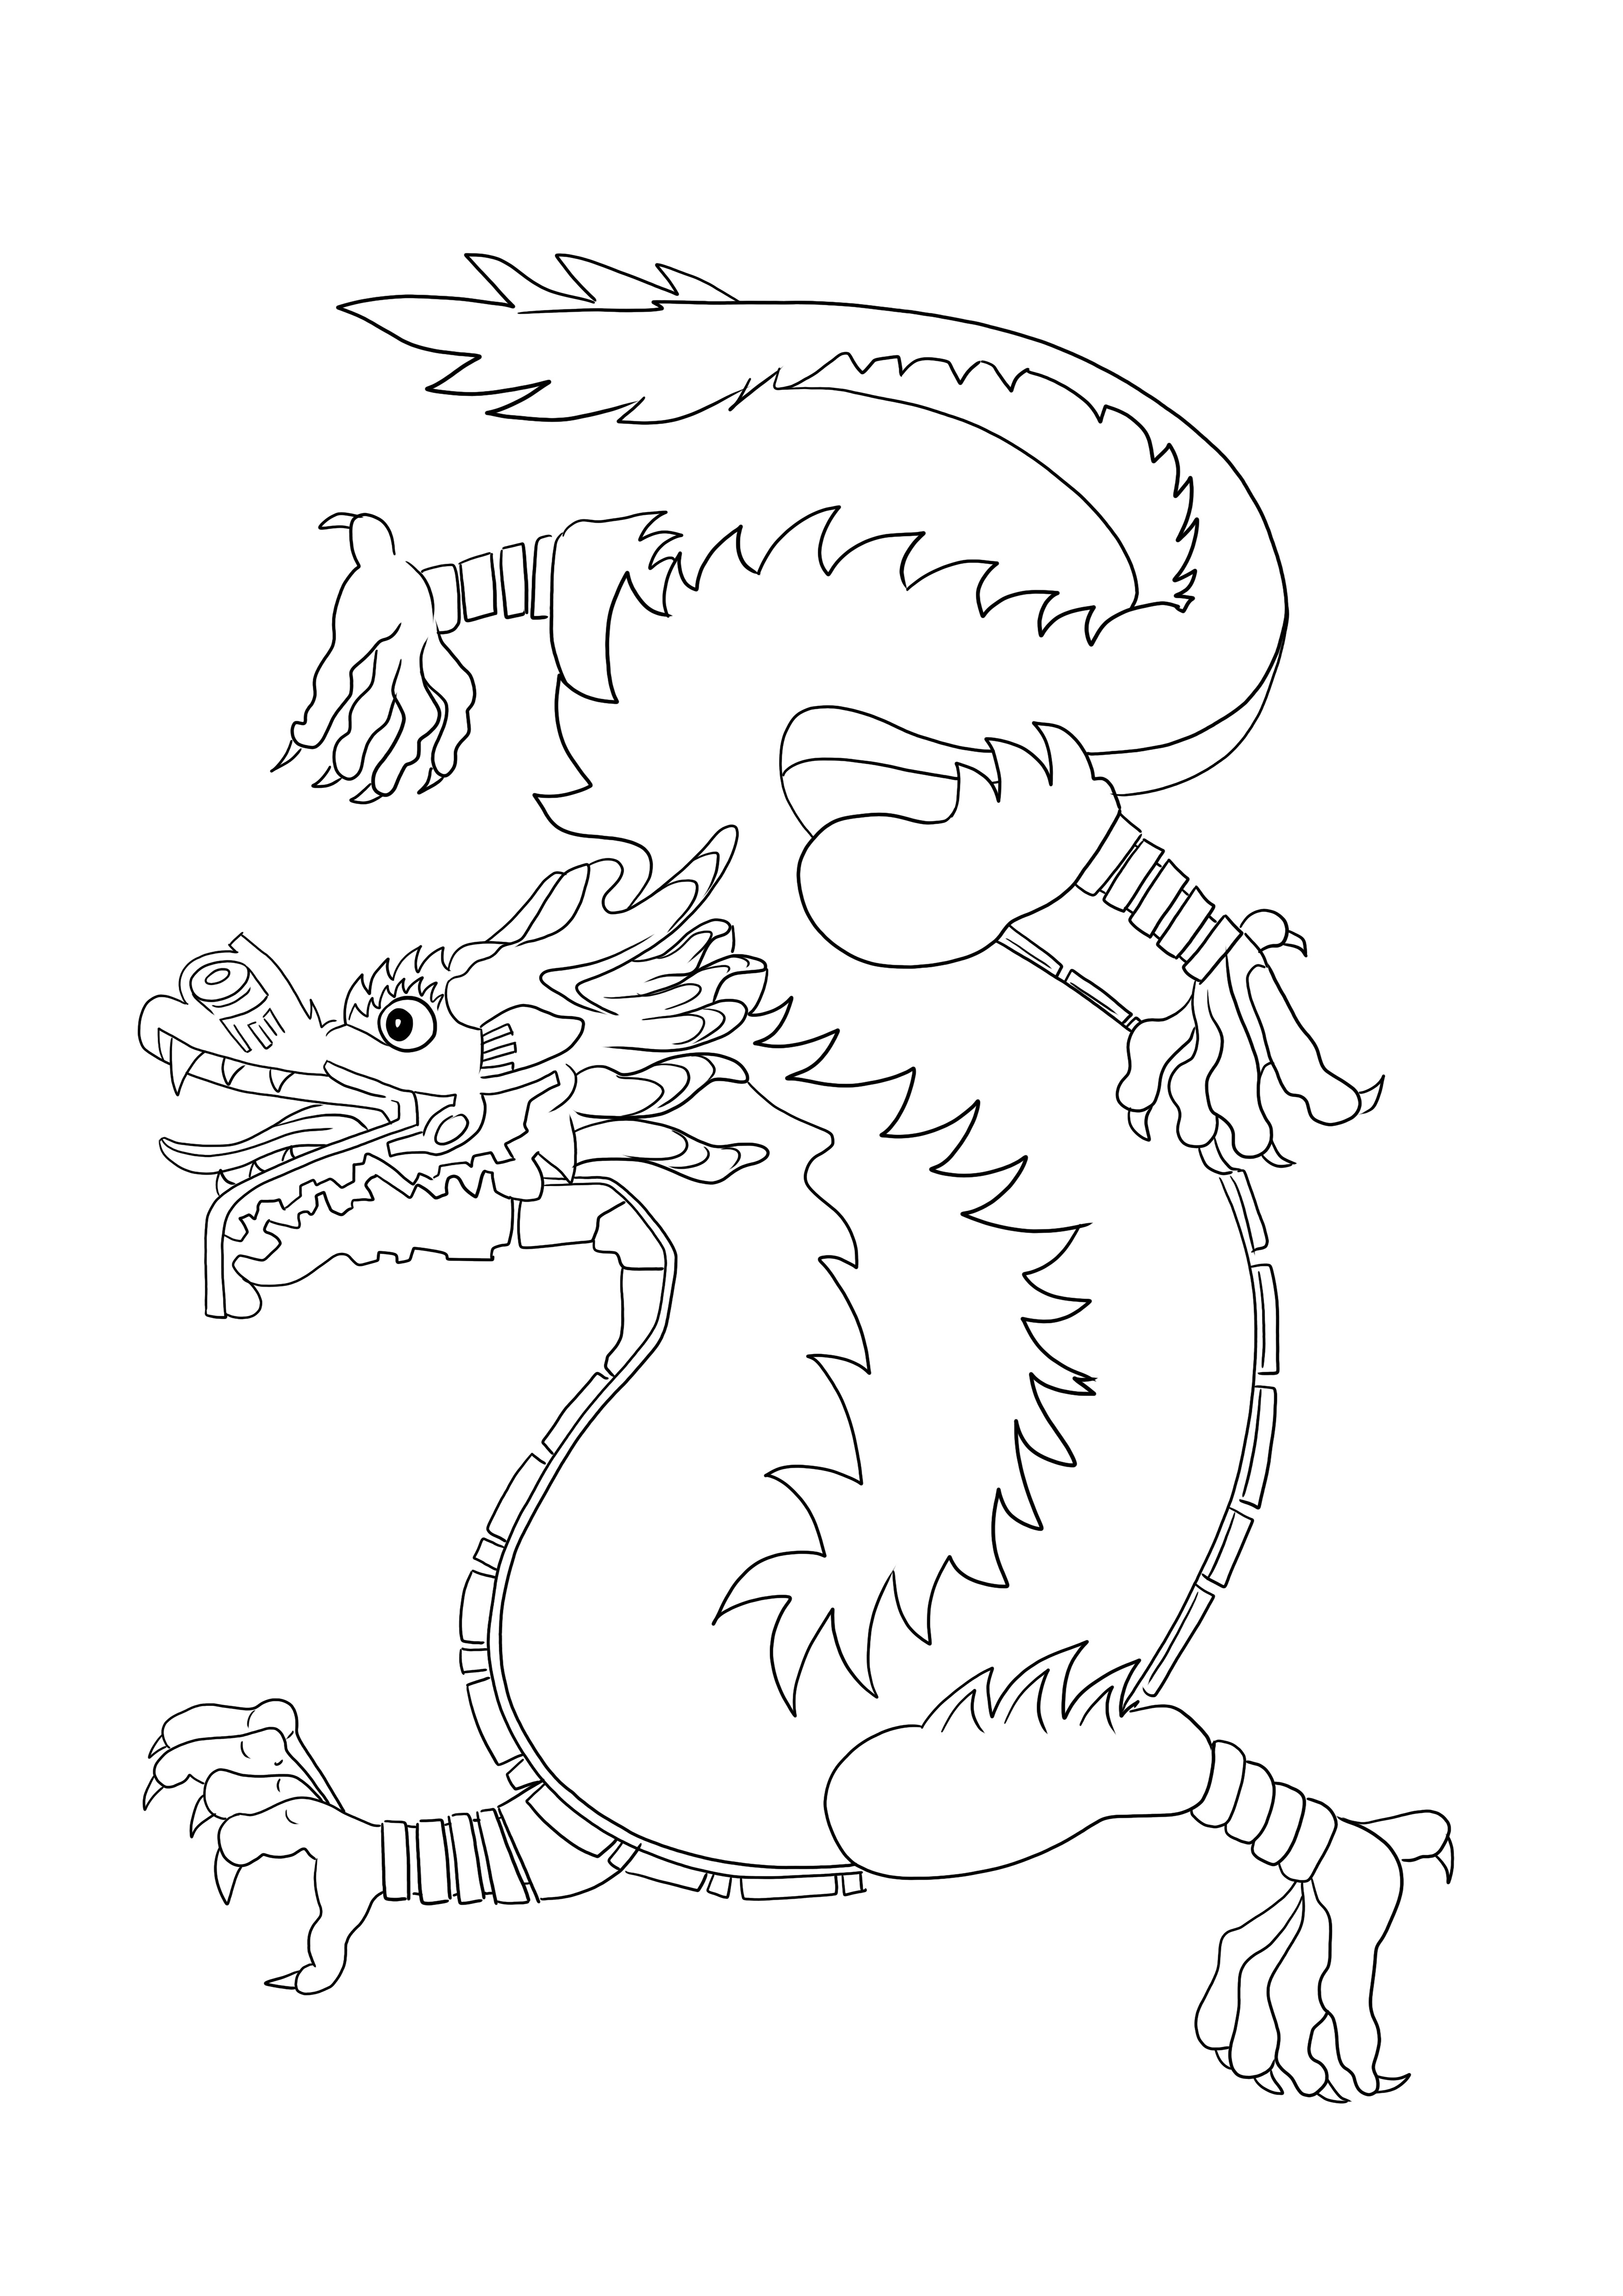 Dibujo de Dragón Chino para colorear para imprimir o descargar gratis para niños